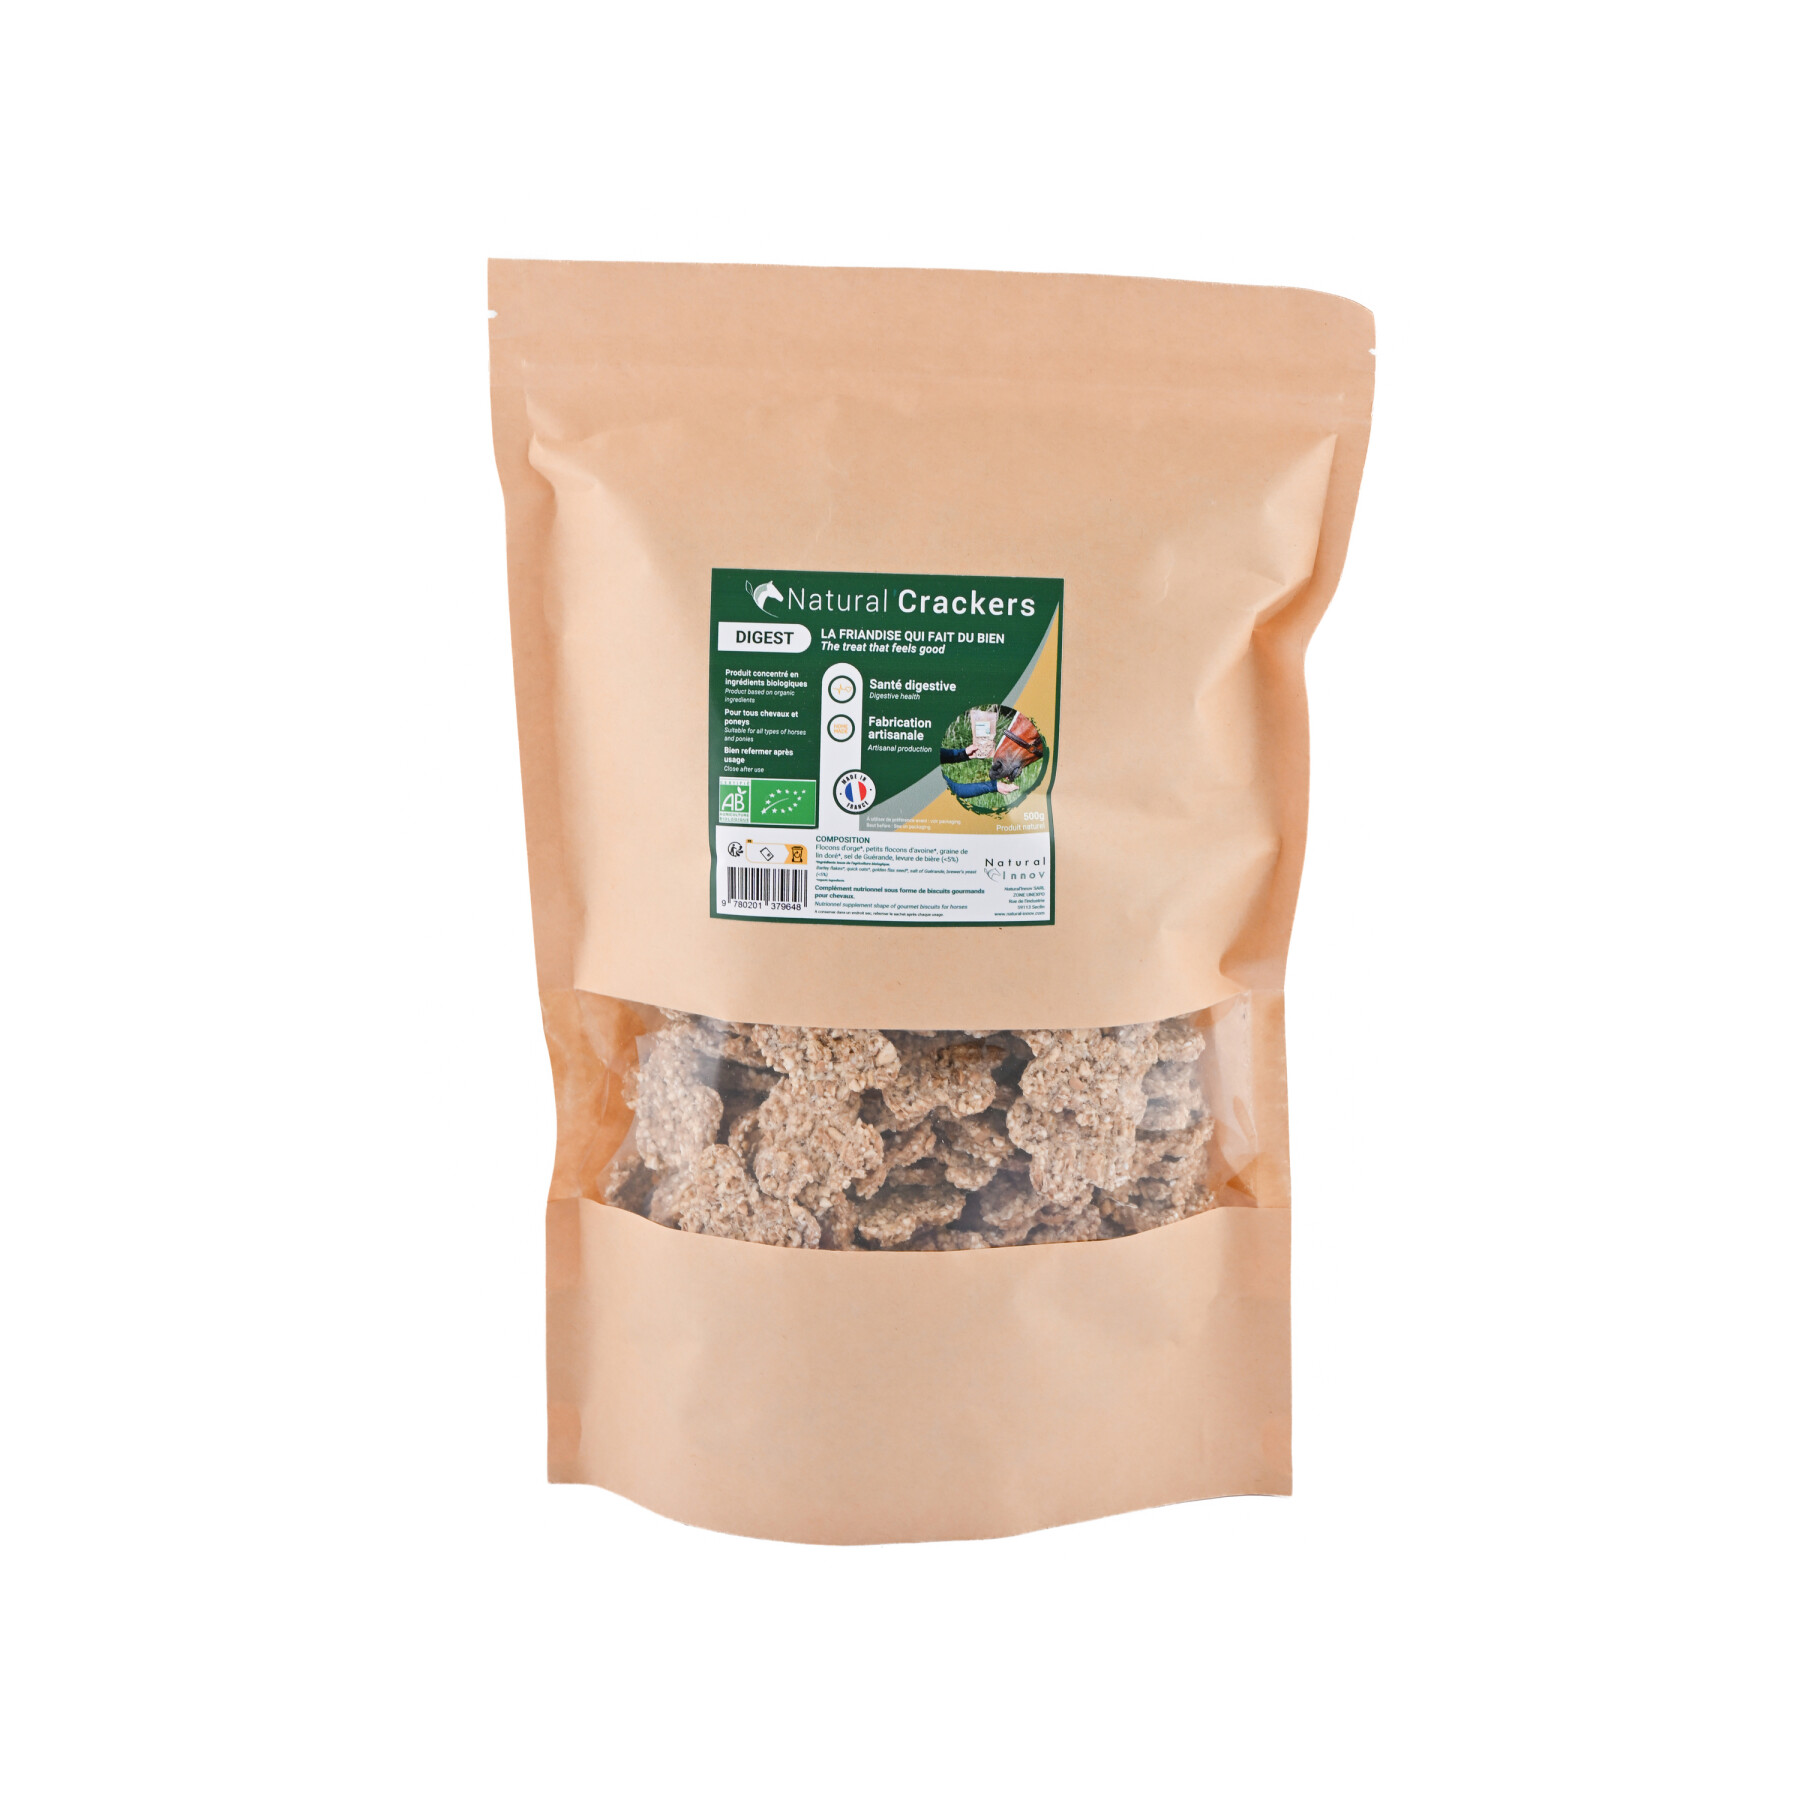 Lievito di birra digestione cracker per cavalli Natural Innov Natural'Crackers Digest - 500 g